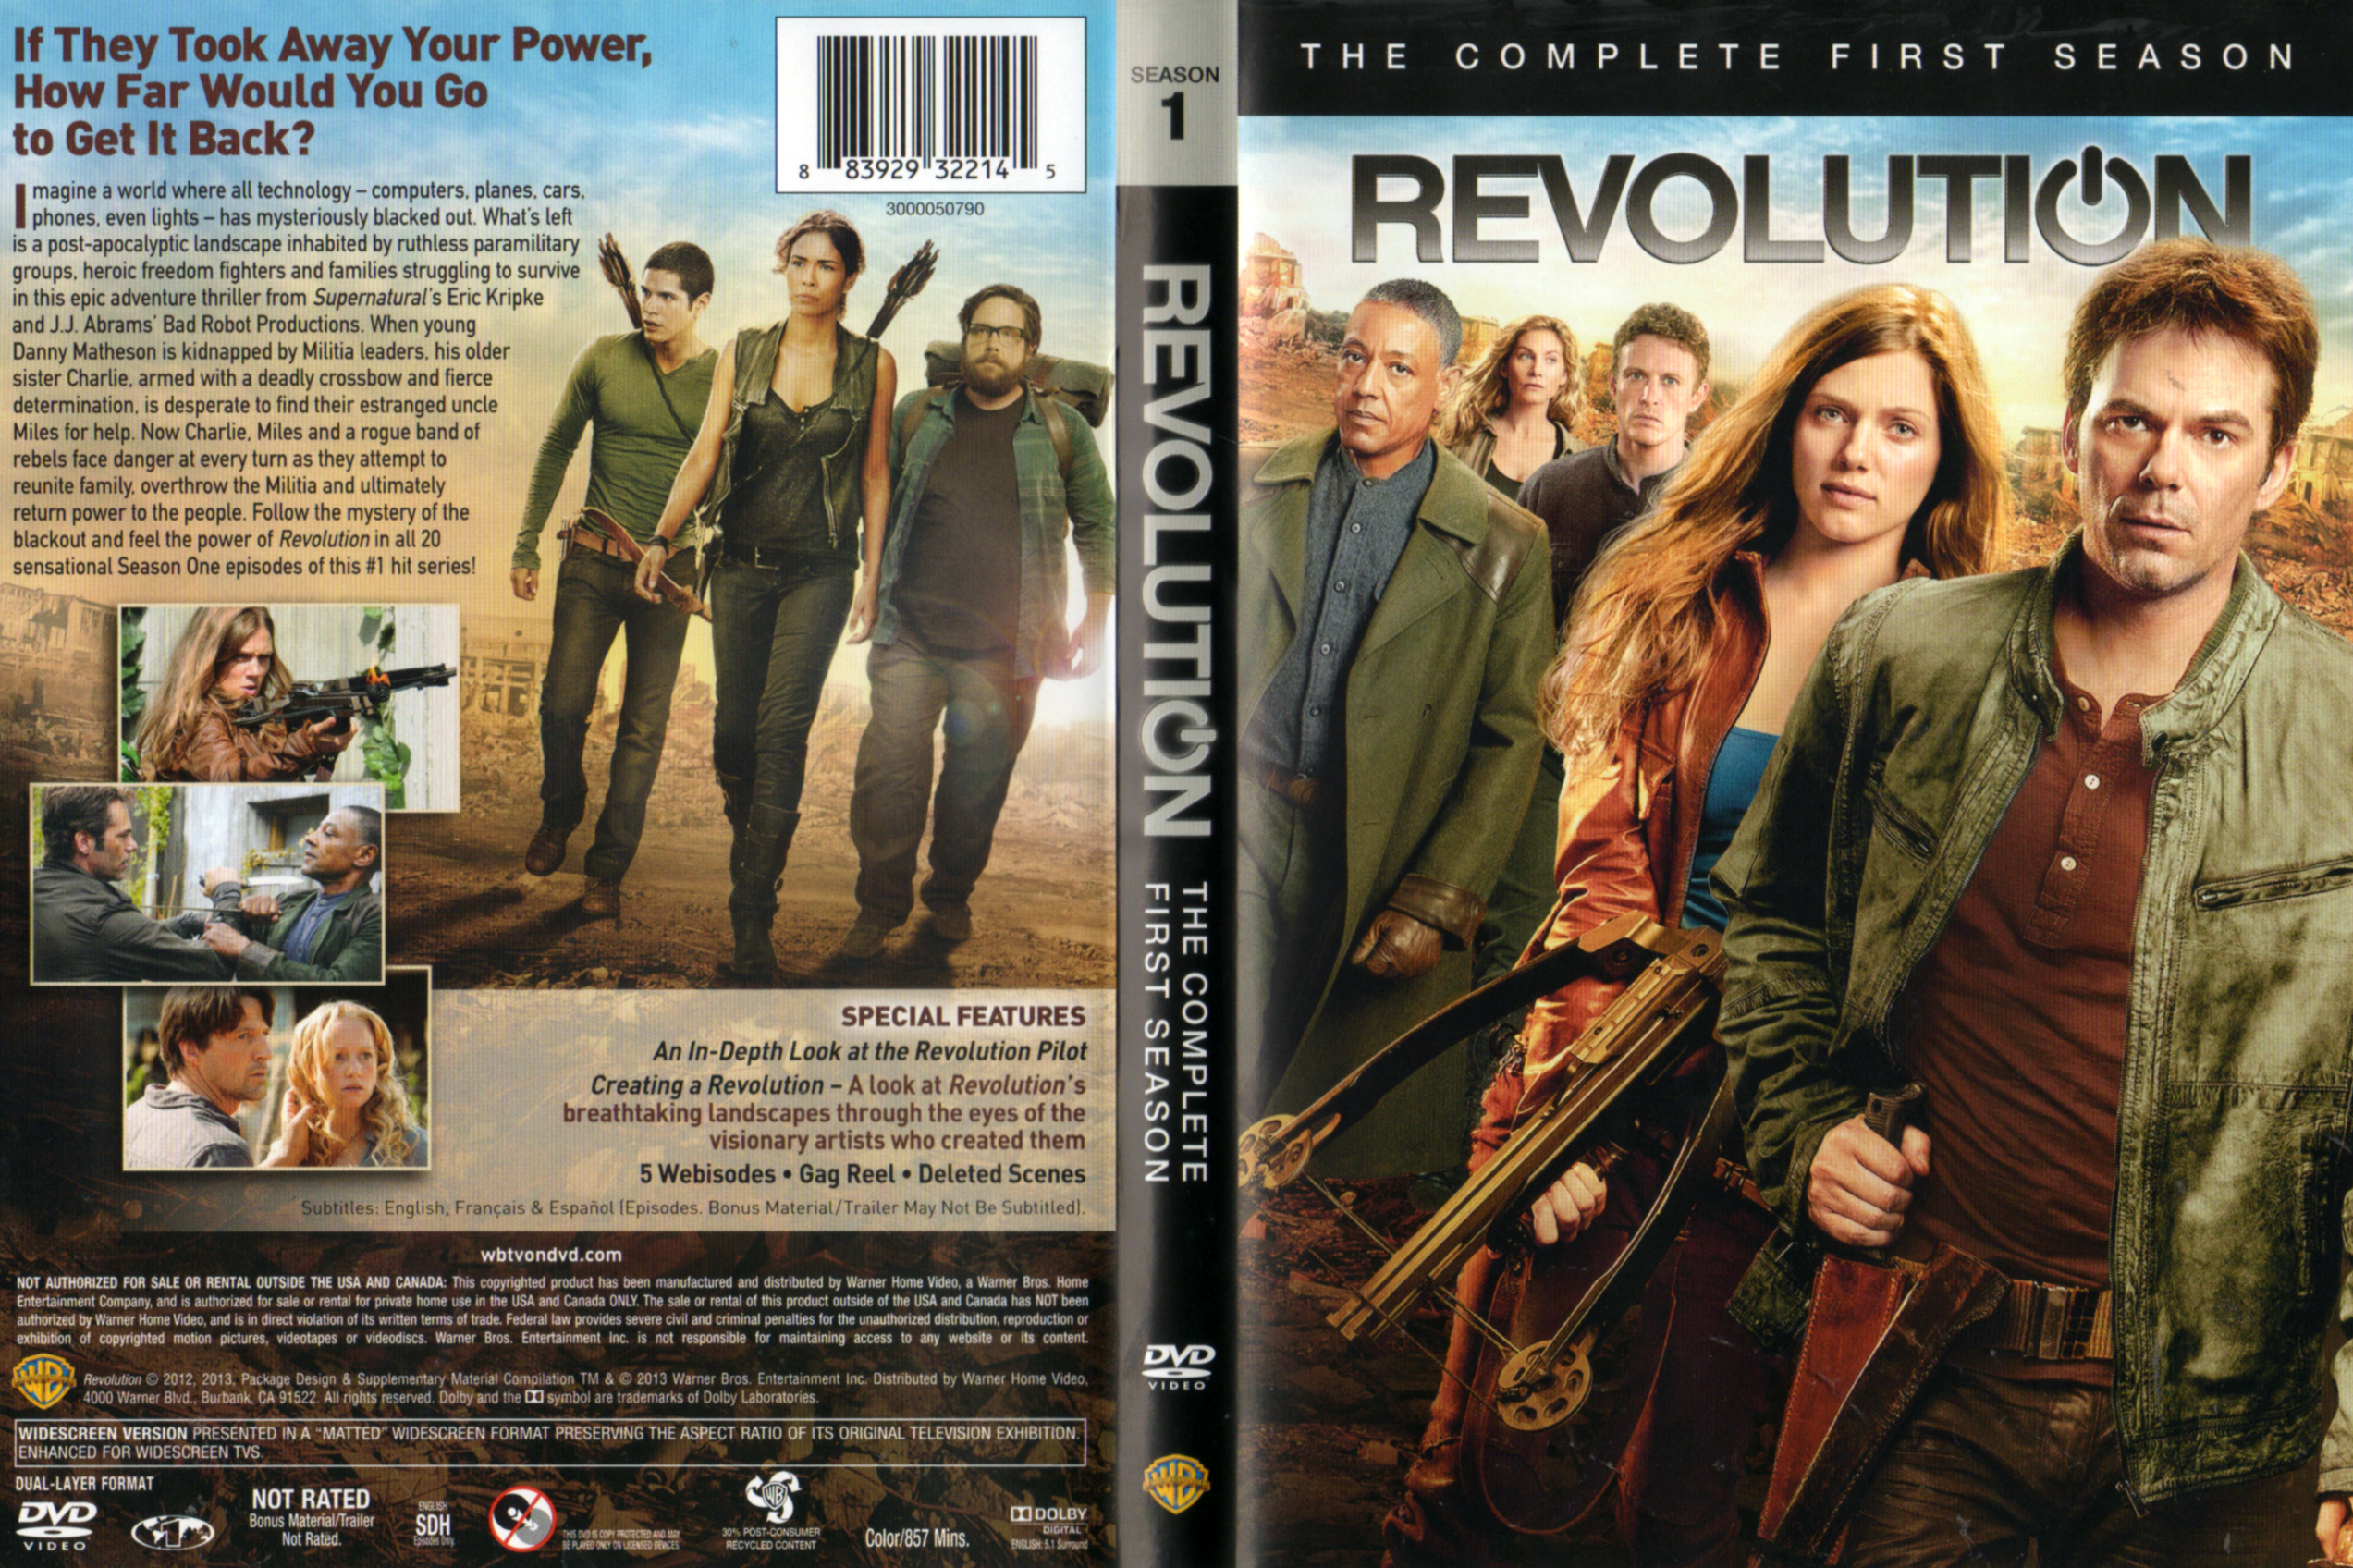 Jaquette DVD Revolution Saison 1 Zone 1